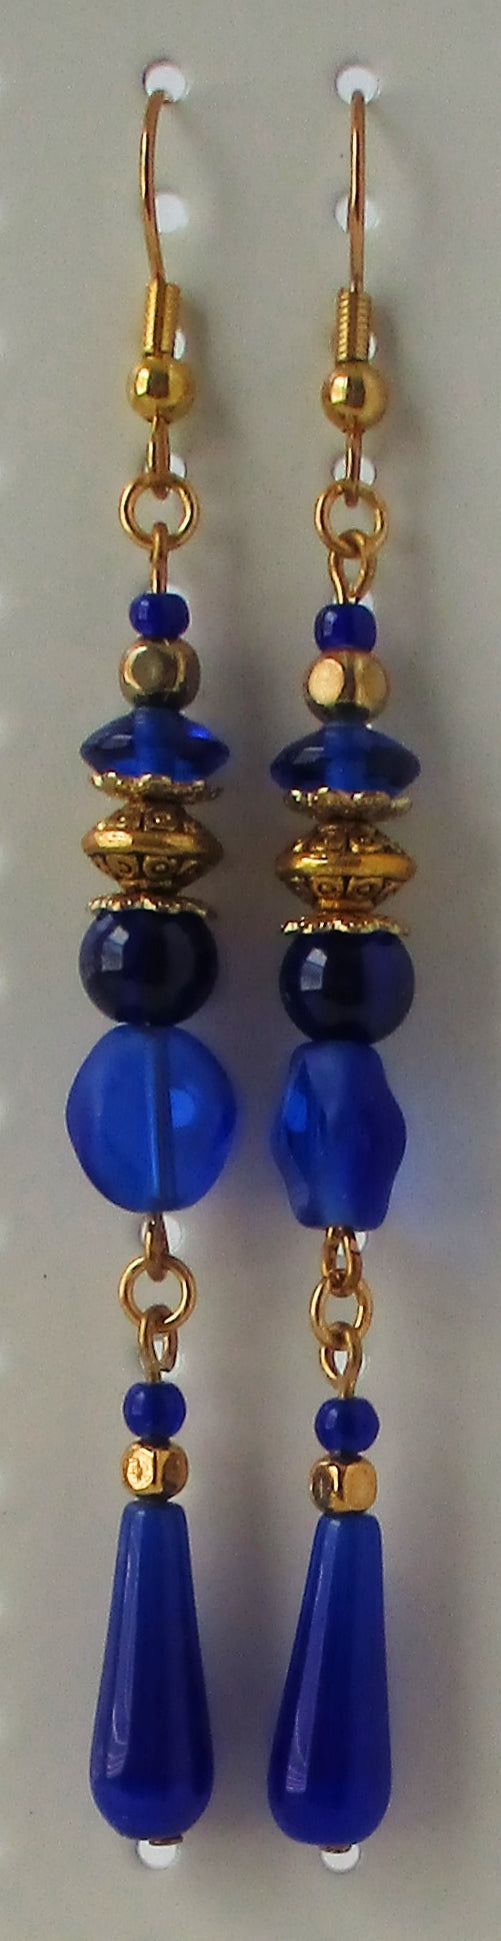 Blue Beaded Long Drop Earrings - Juicybeads Jewelry